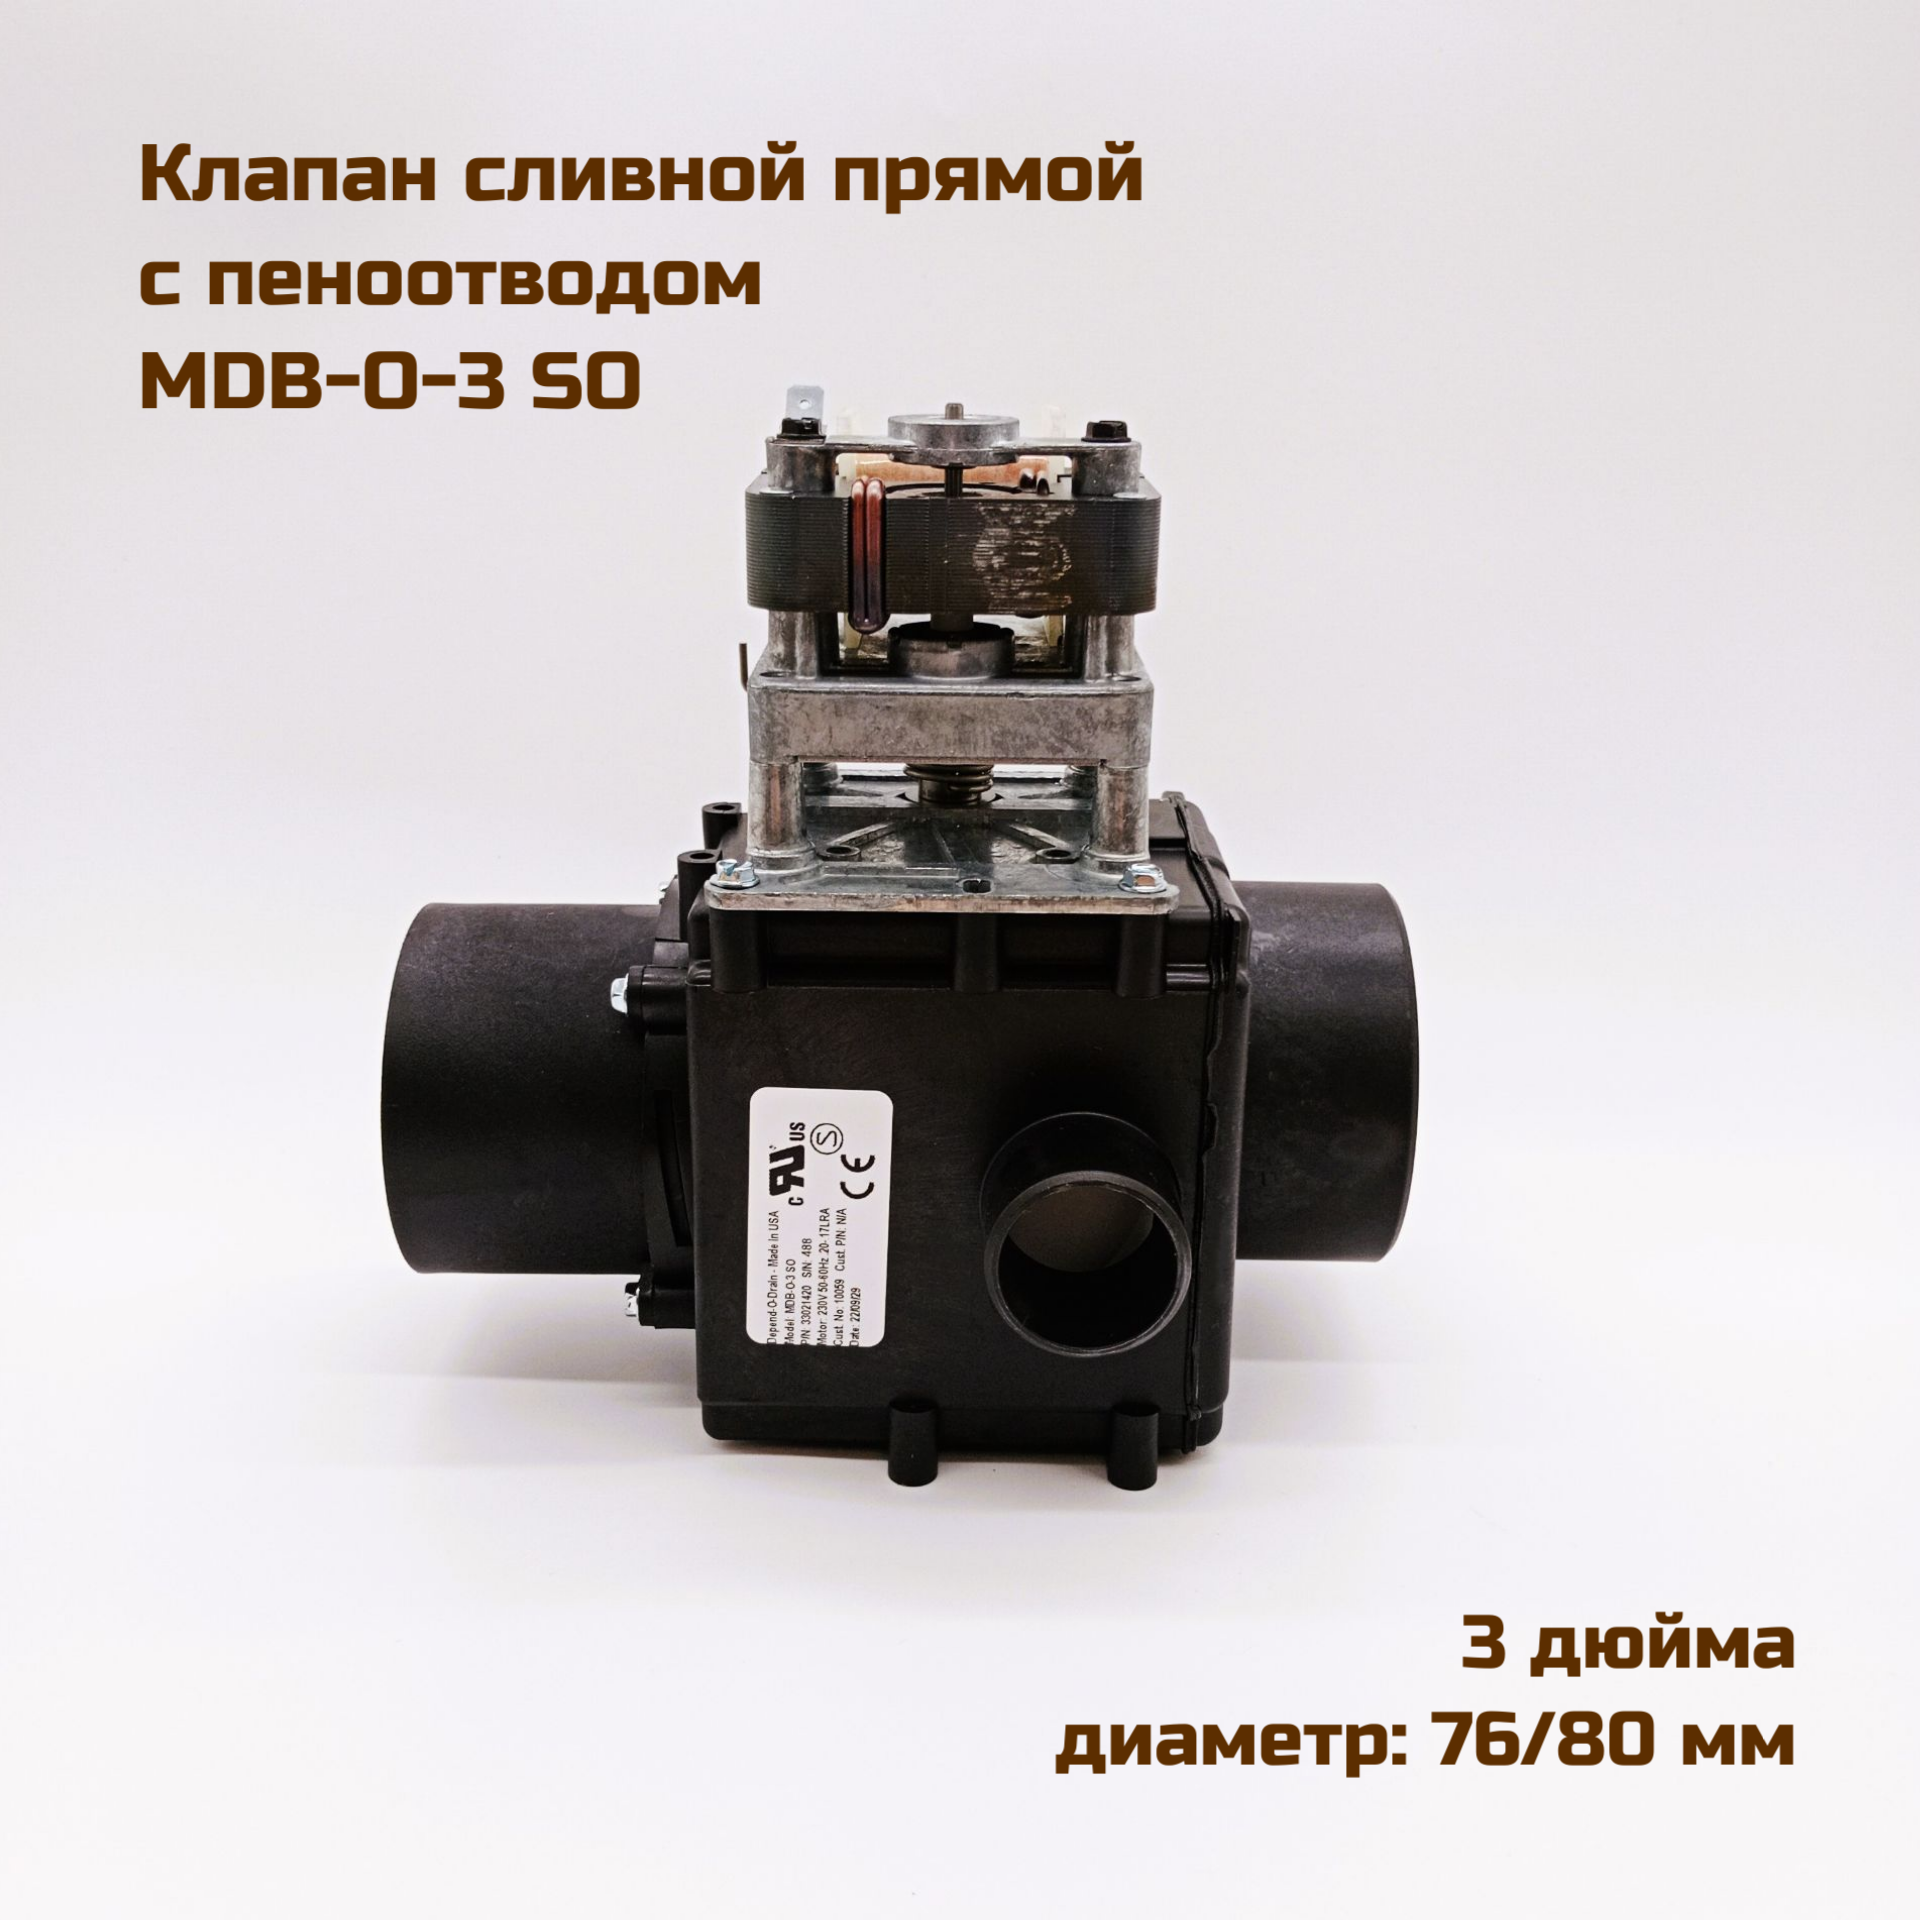 Клапан сливной (выпускной) Depend-O-Drain, MDB-O-3 SO, прямой, 2 дюйма, АС230V, 50/60Hz